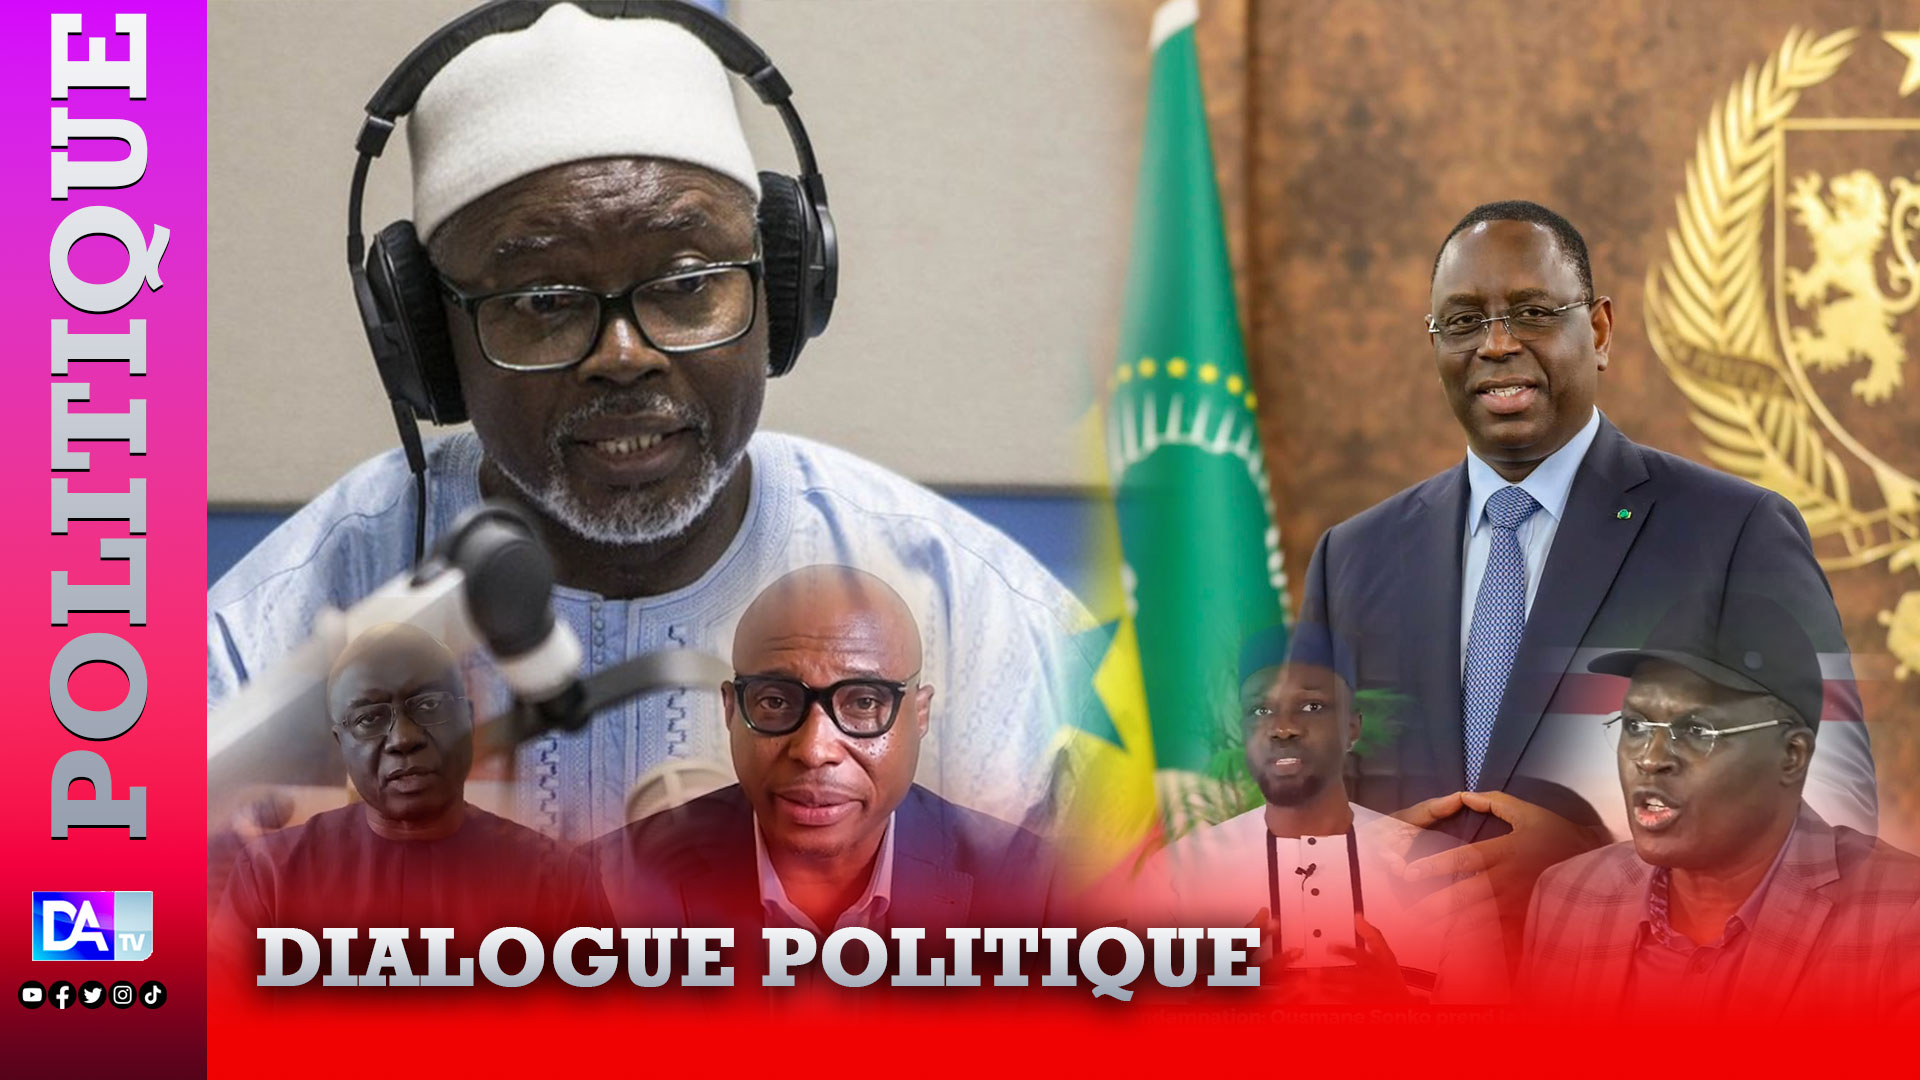 Dialogue politique : AfrikaJom expose son caractère improductif dans la marche démocratique.